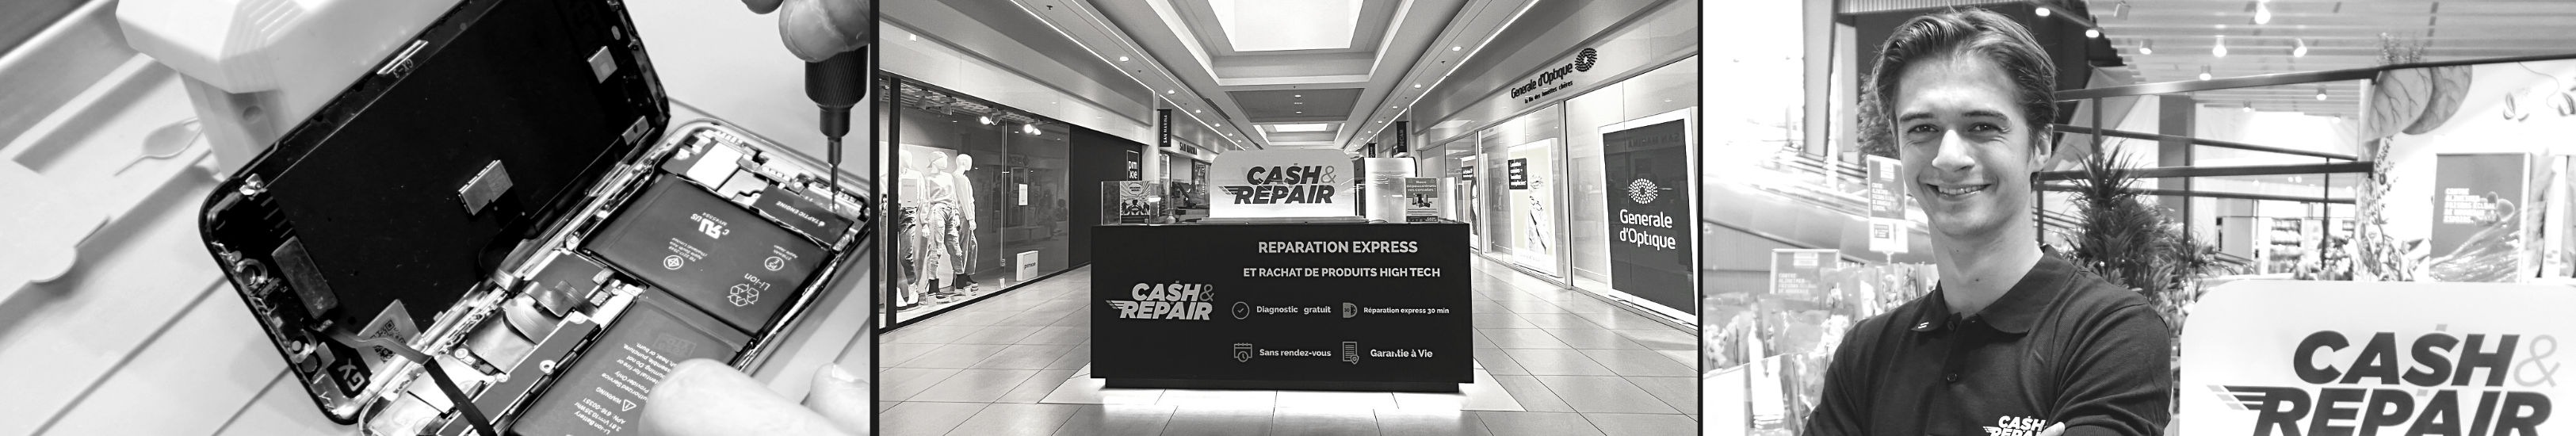 - Atelier de réparation Cash and Repair Perpignan